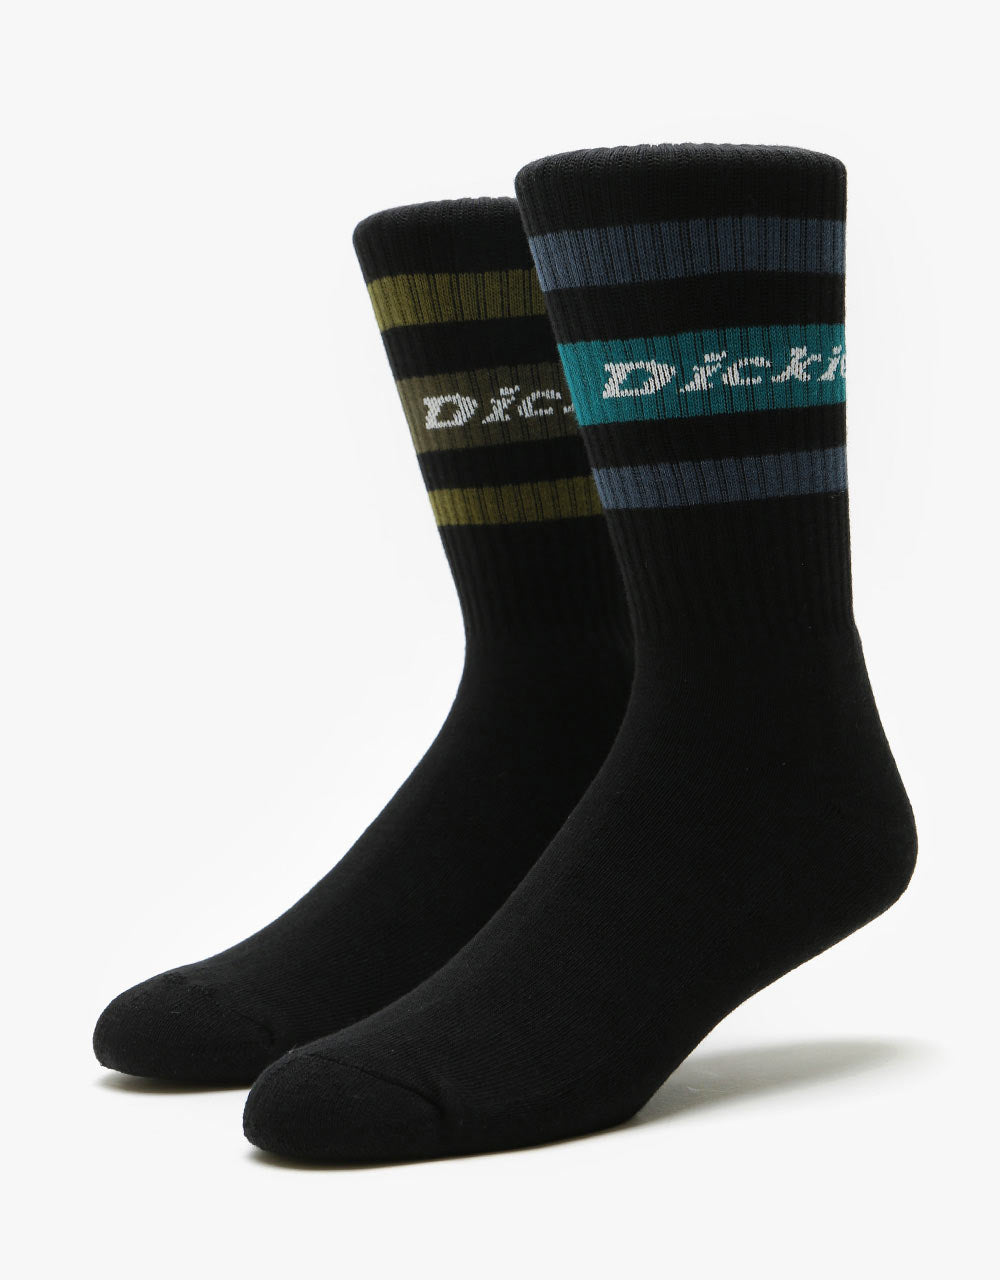 Dickies Madison Heights Socks - Black